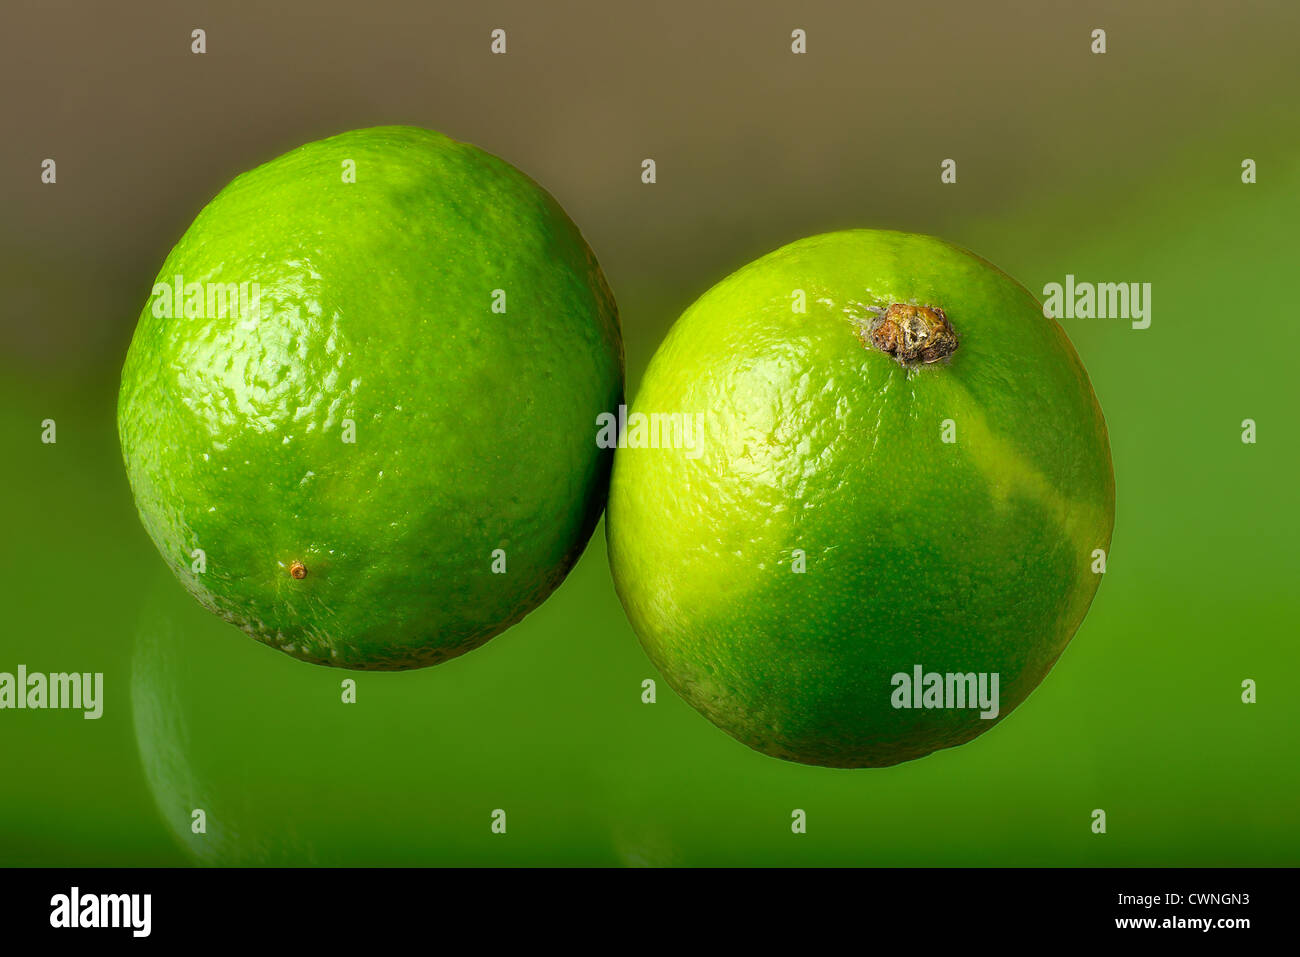 Zwei Limetten nebeneinander, hervorgehoben von einem grün-braunen weichgezeichneten Hintergrund. Two green limes Stock Photo